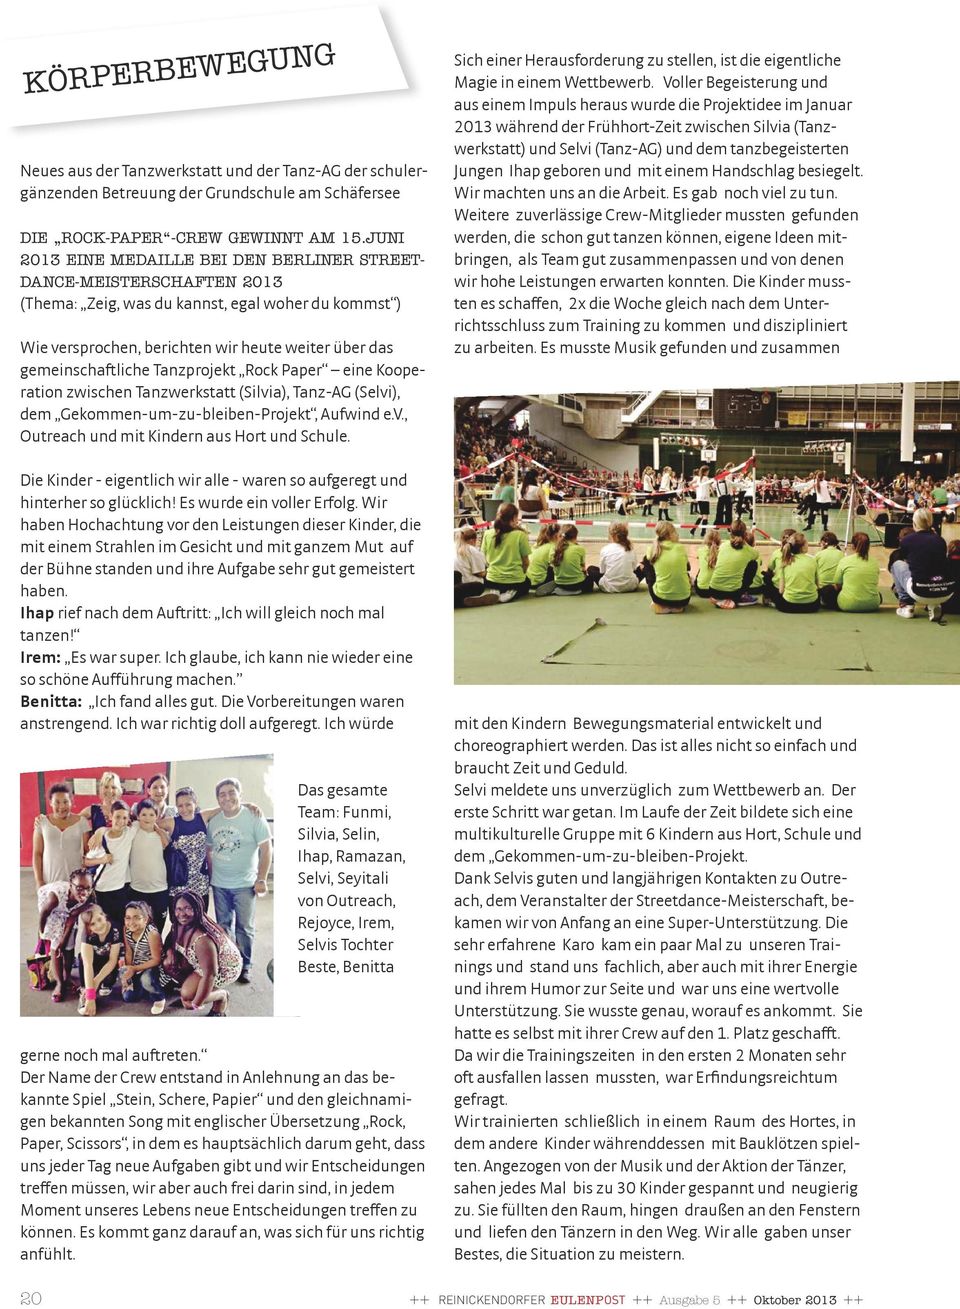 Tanzprojekt Rock Paper eine Kooperation zwischen Tanzwerkstatt (Silvia), Tanz-AG (Selvi), dem Gekommen-um-zu-bleiben-Projekt, Aufwind e.v., Outreach und mit Kindern aus Hort und Schule.